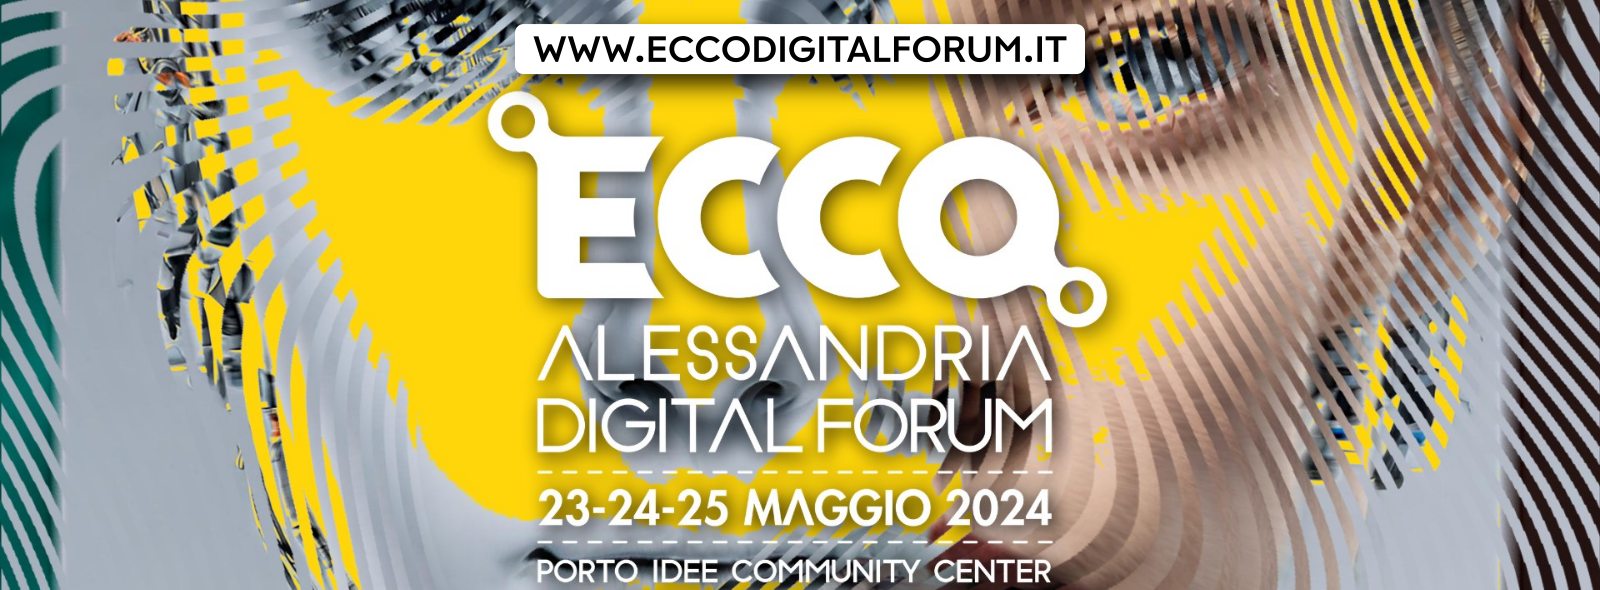 UPO partecipa alla seconda edizione di ECCO Alessandria Digital Forum